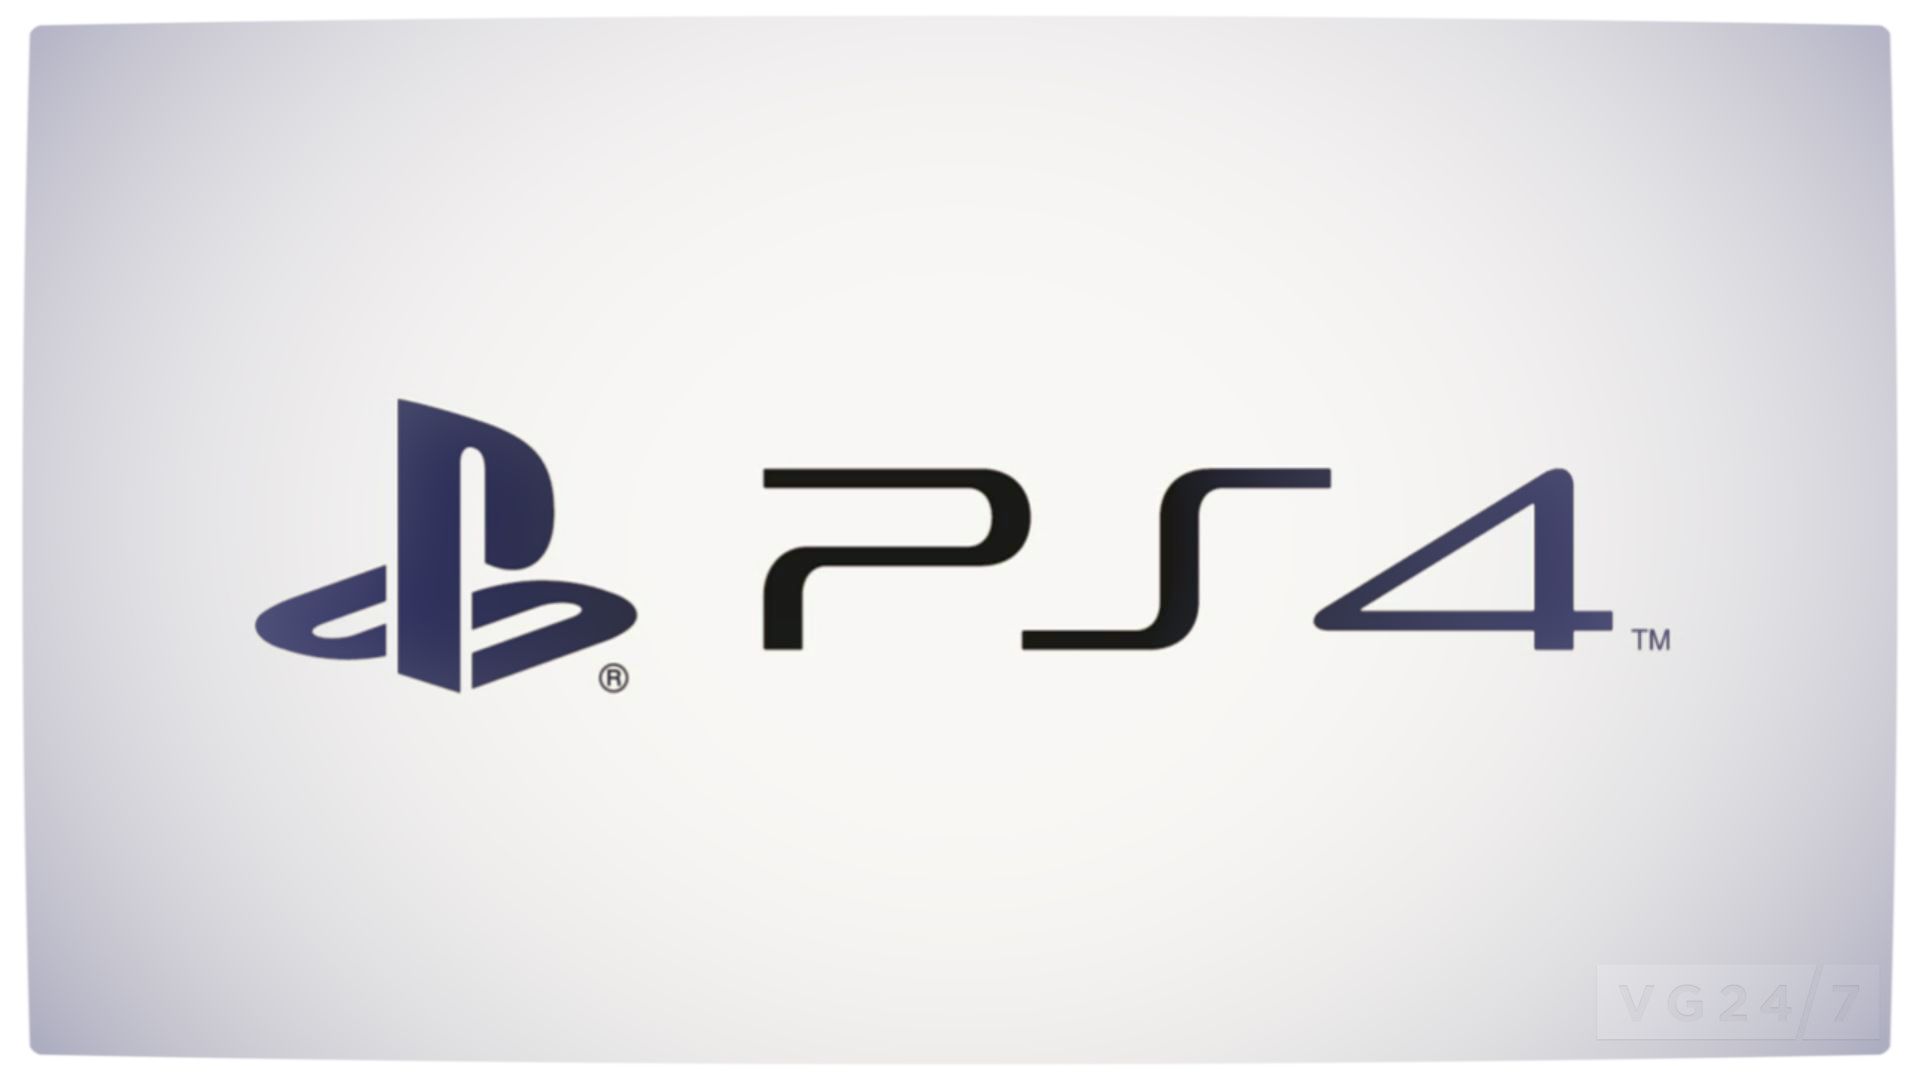 Playstation 4 Logos